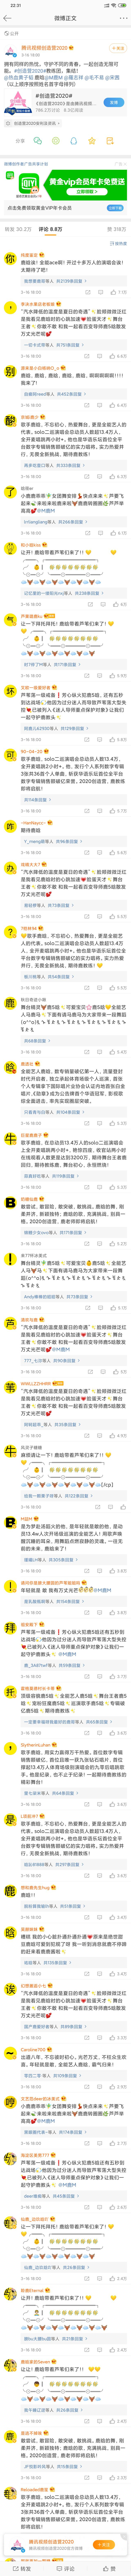 鹿晗粉丝头像控评 吃瓜网友：被震惊到了！